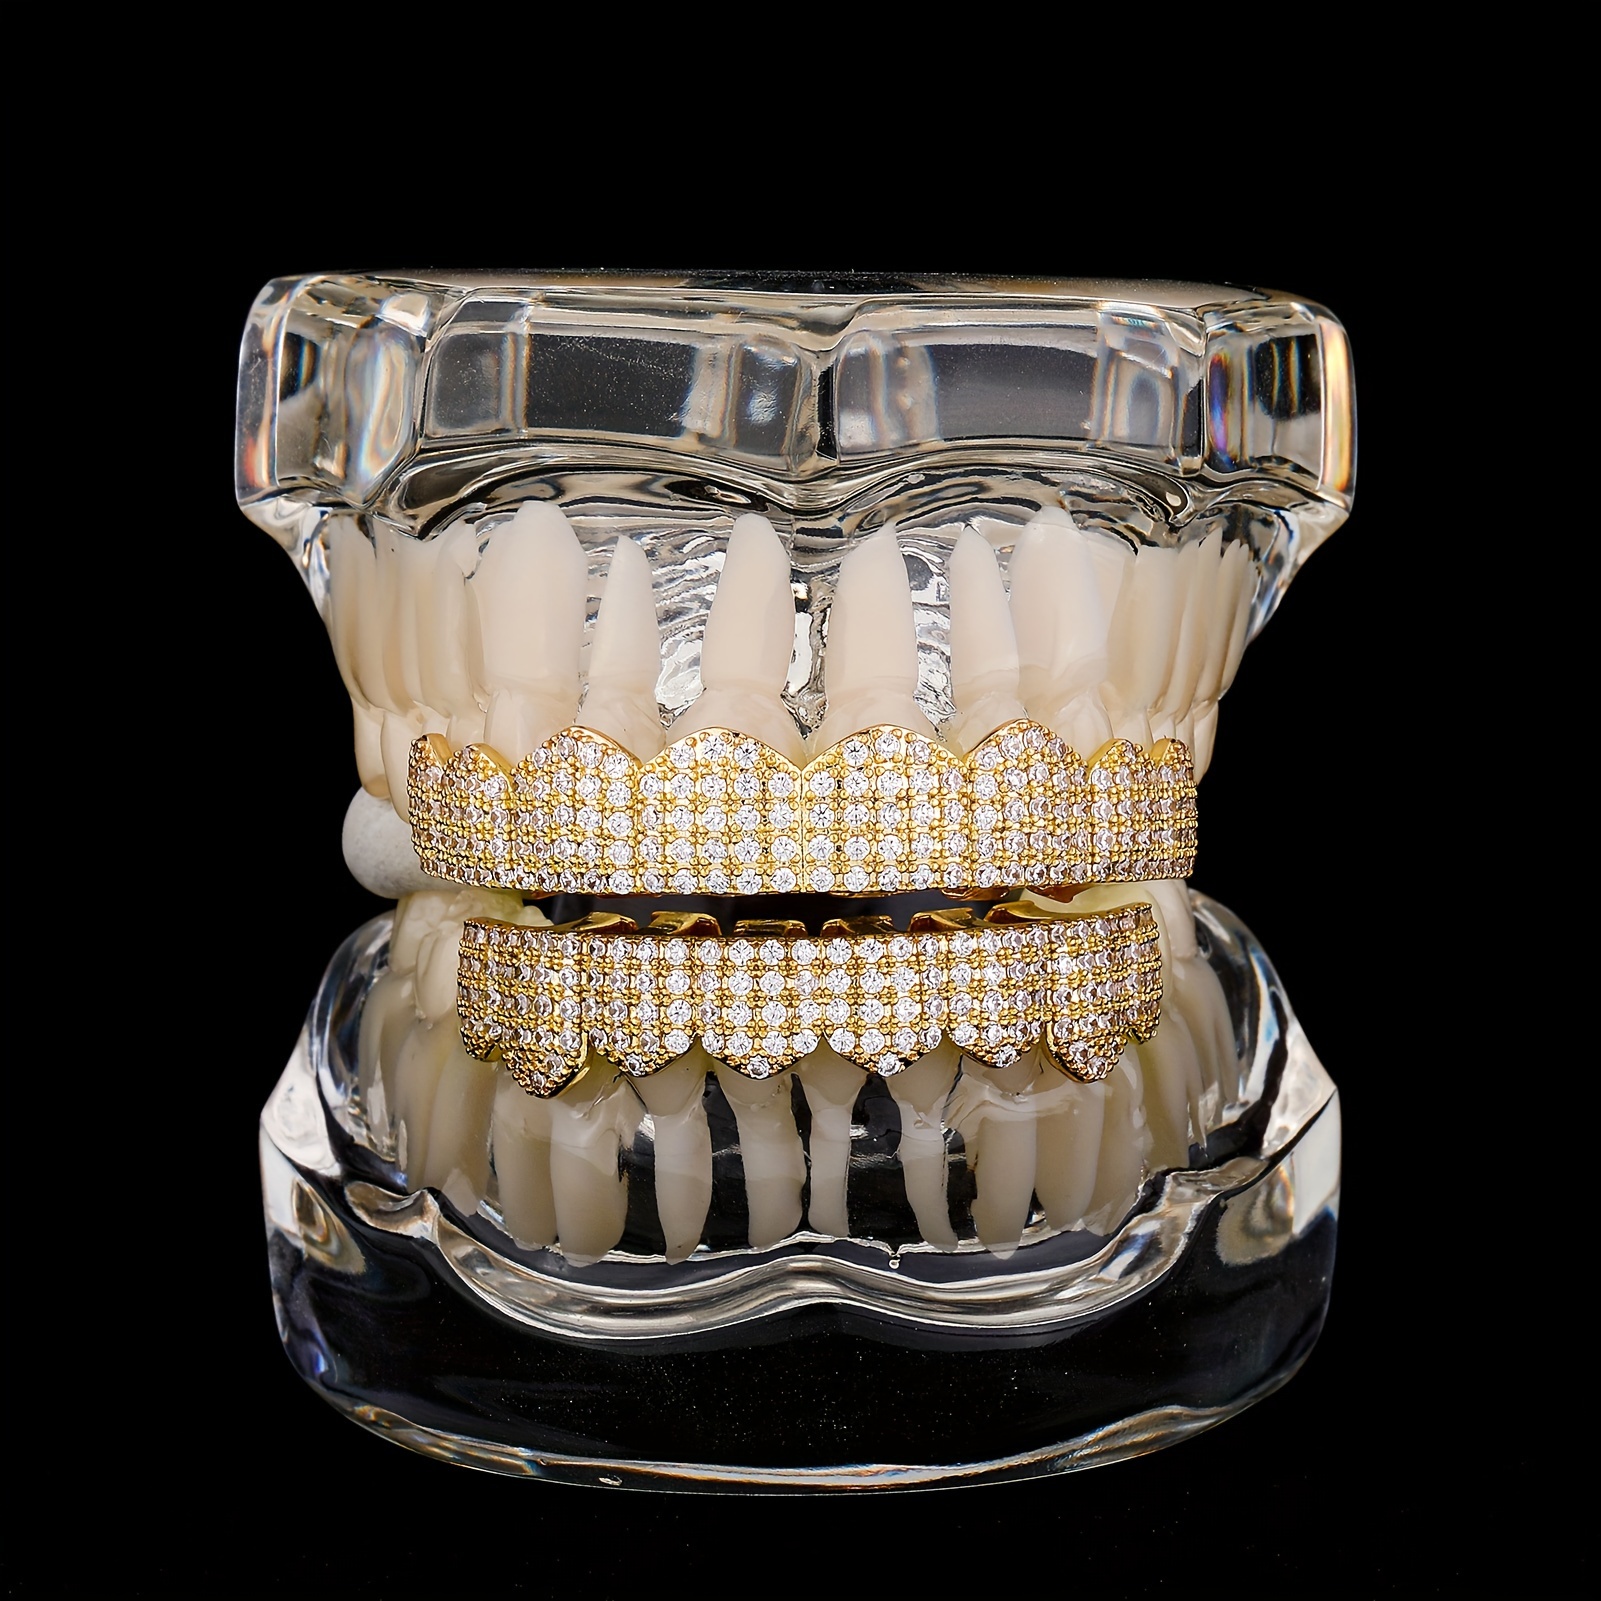 Seis dientes prefabricados en dos tonos con forma irregular en forma de  cruz de diamante Grillz - Dientes Grillz - APORRO